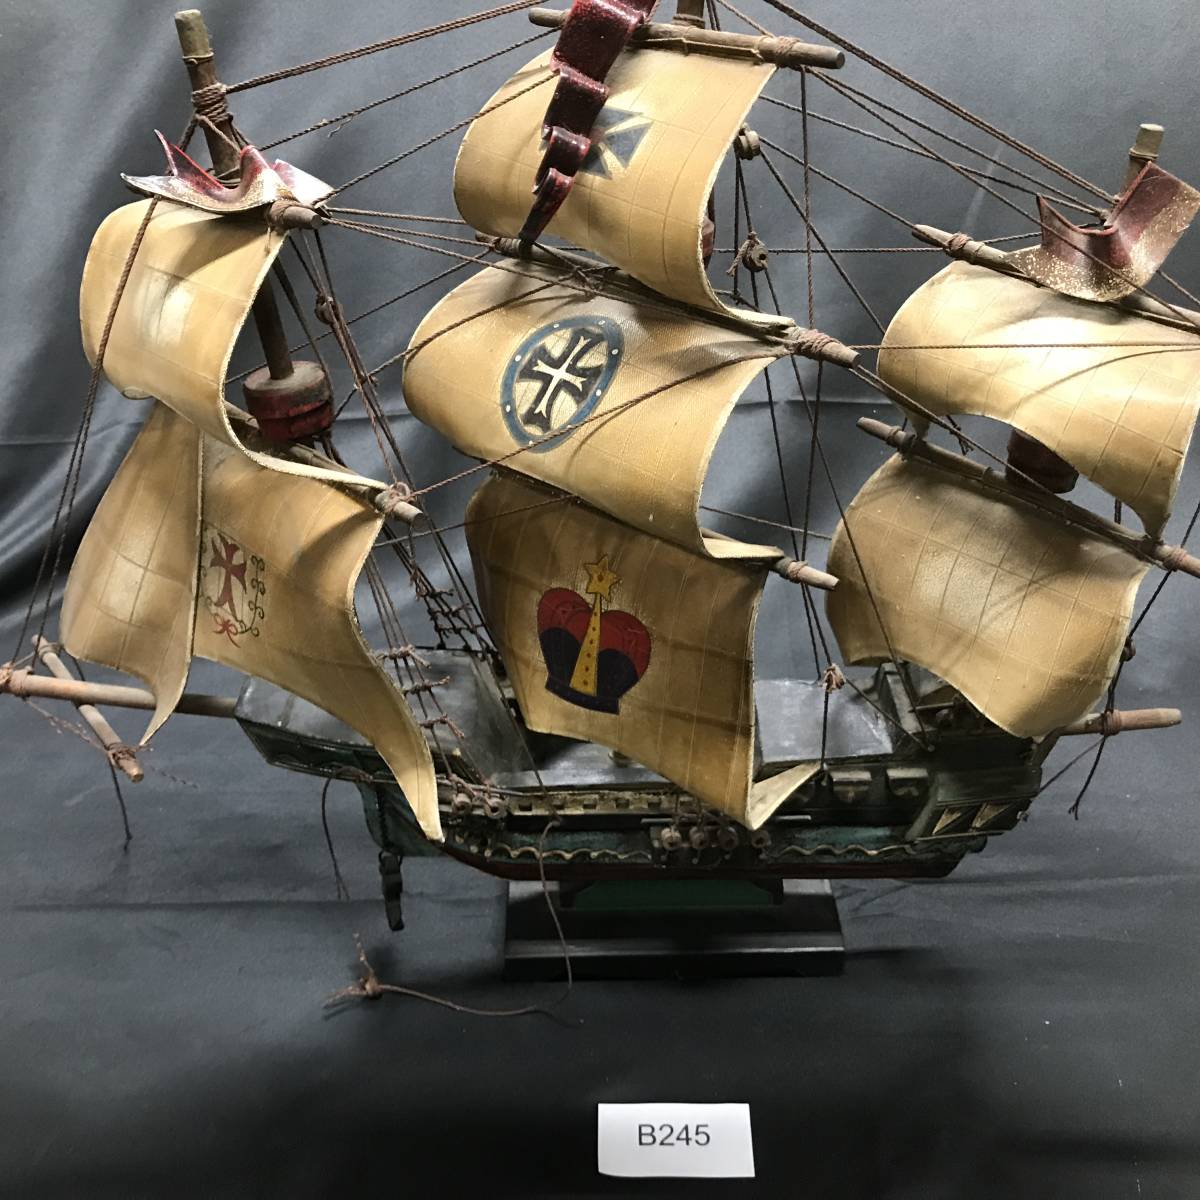 クイーンエリザベス号 帆船模型 レトロ QUEEN ELIZABETH号 帆船 模型 